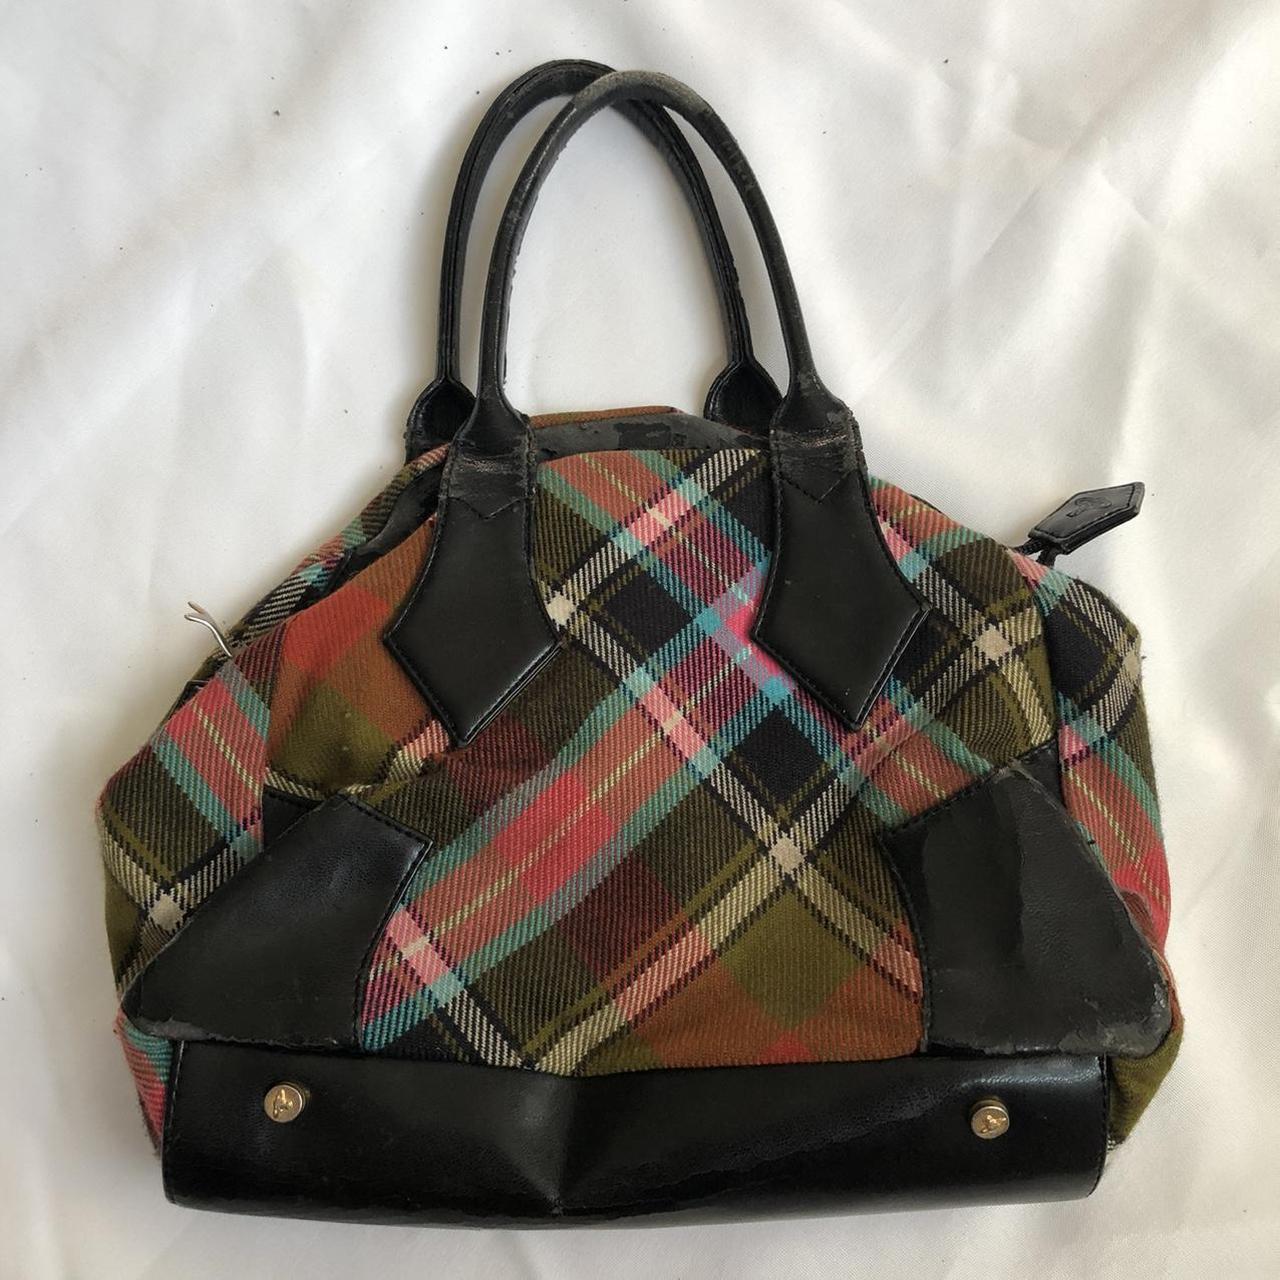 Vintage Vivienne Westwood tartan bag Has leather... - Depop